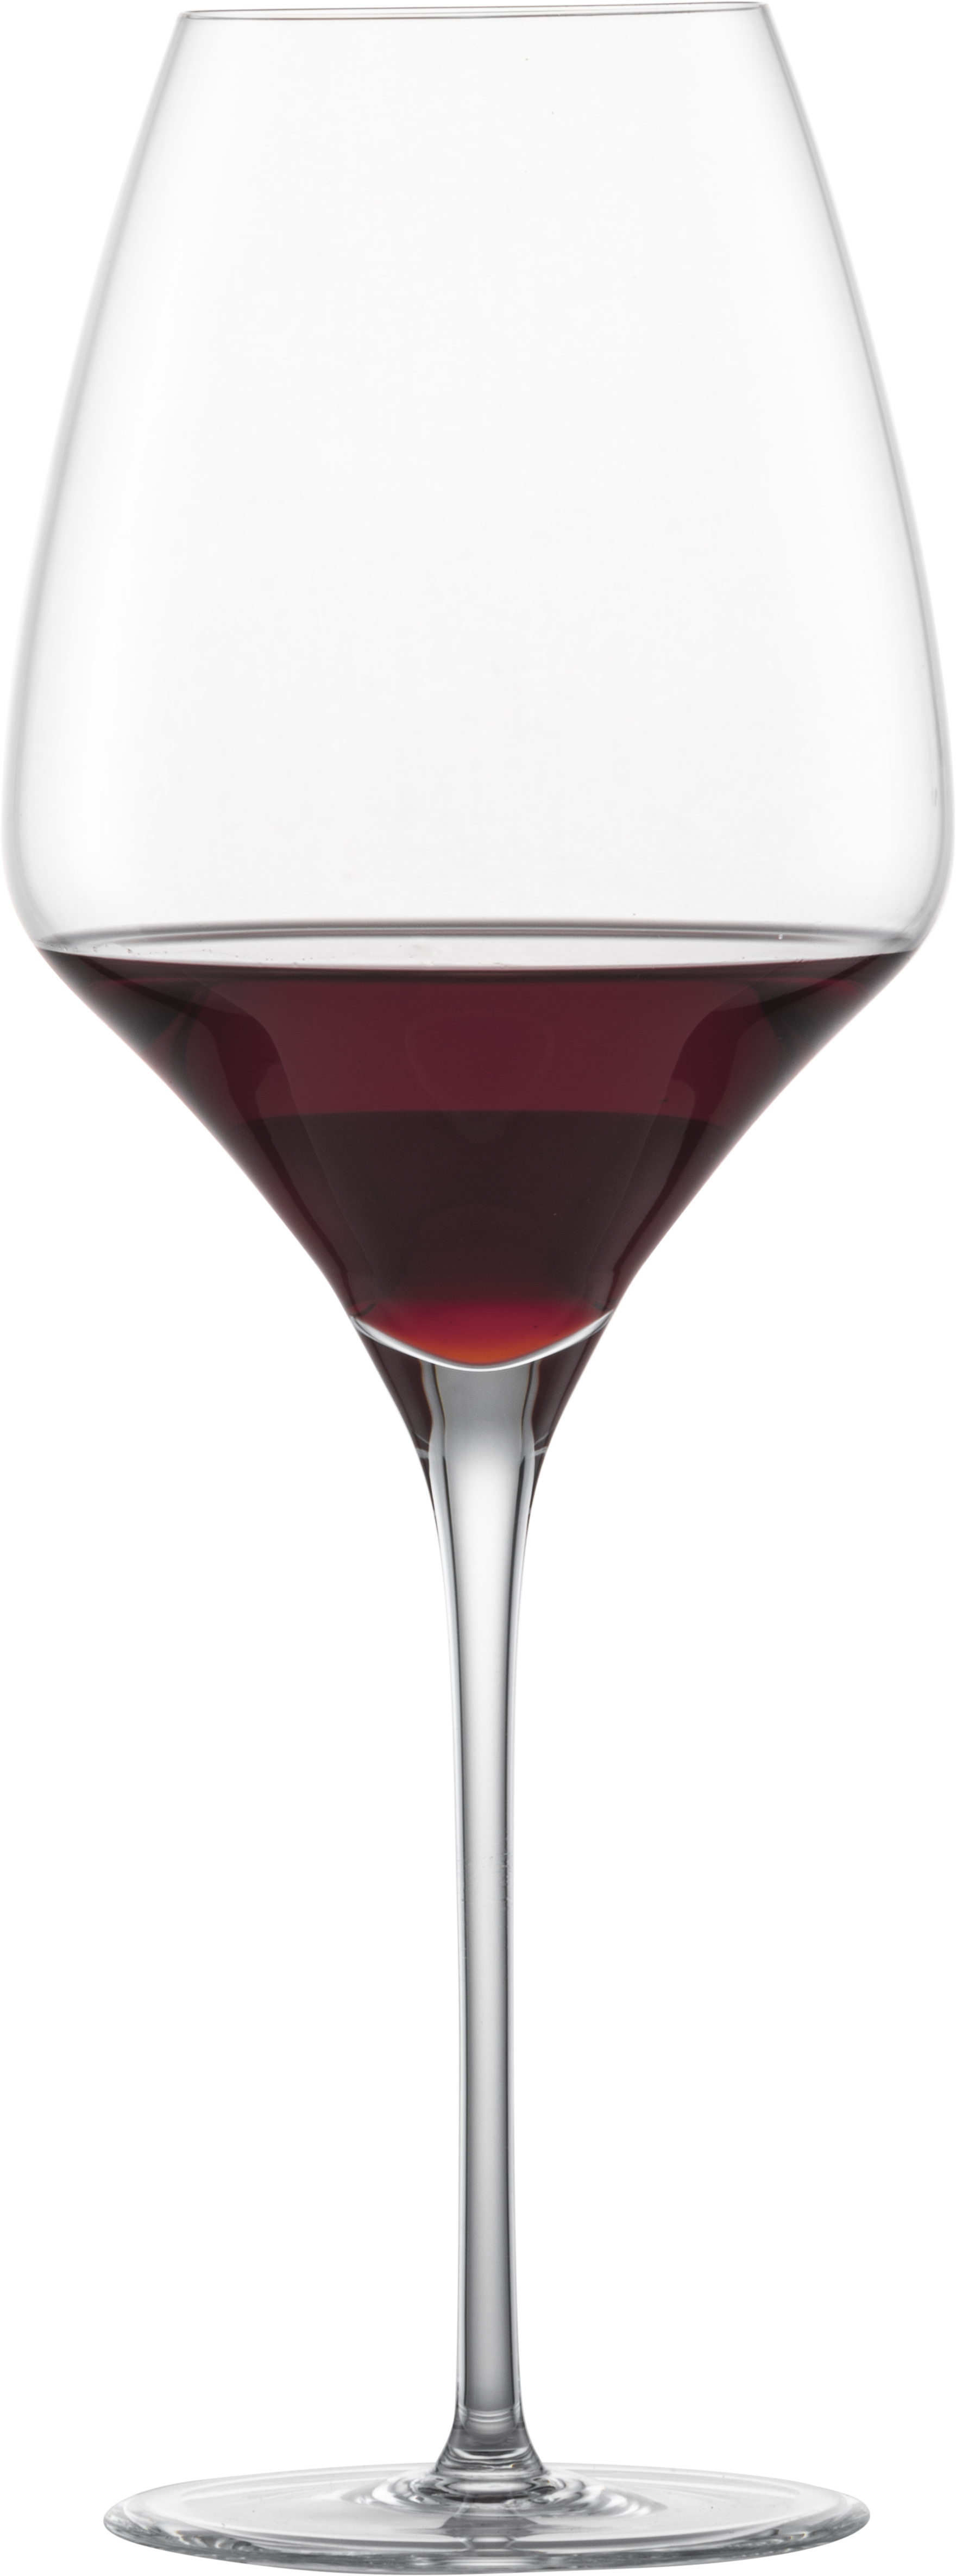 Cabernet Sauvignon red wine glass Alloro | ZWIESEL GLAS